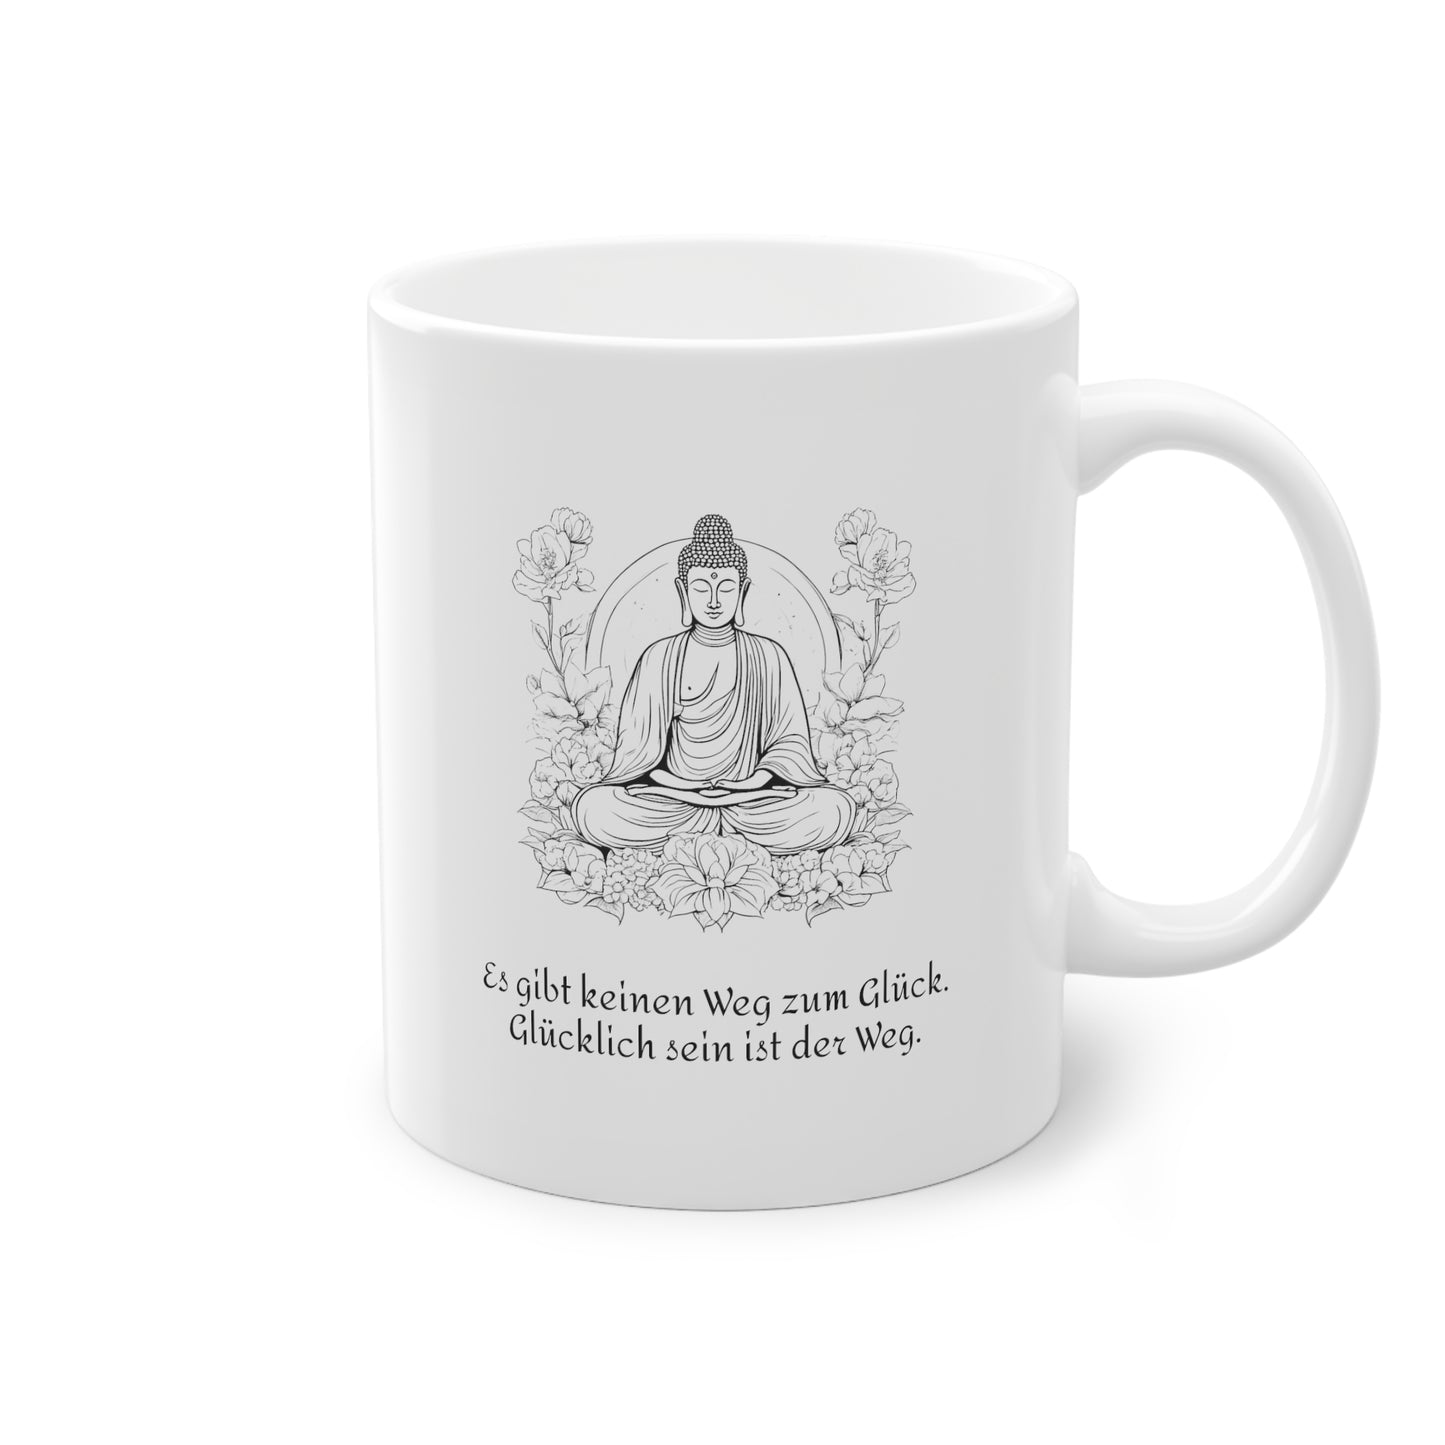 Weisse Tasse Sinnspruch Buddha "Glück"